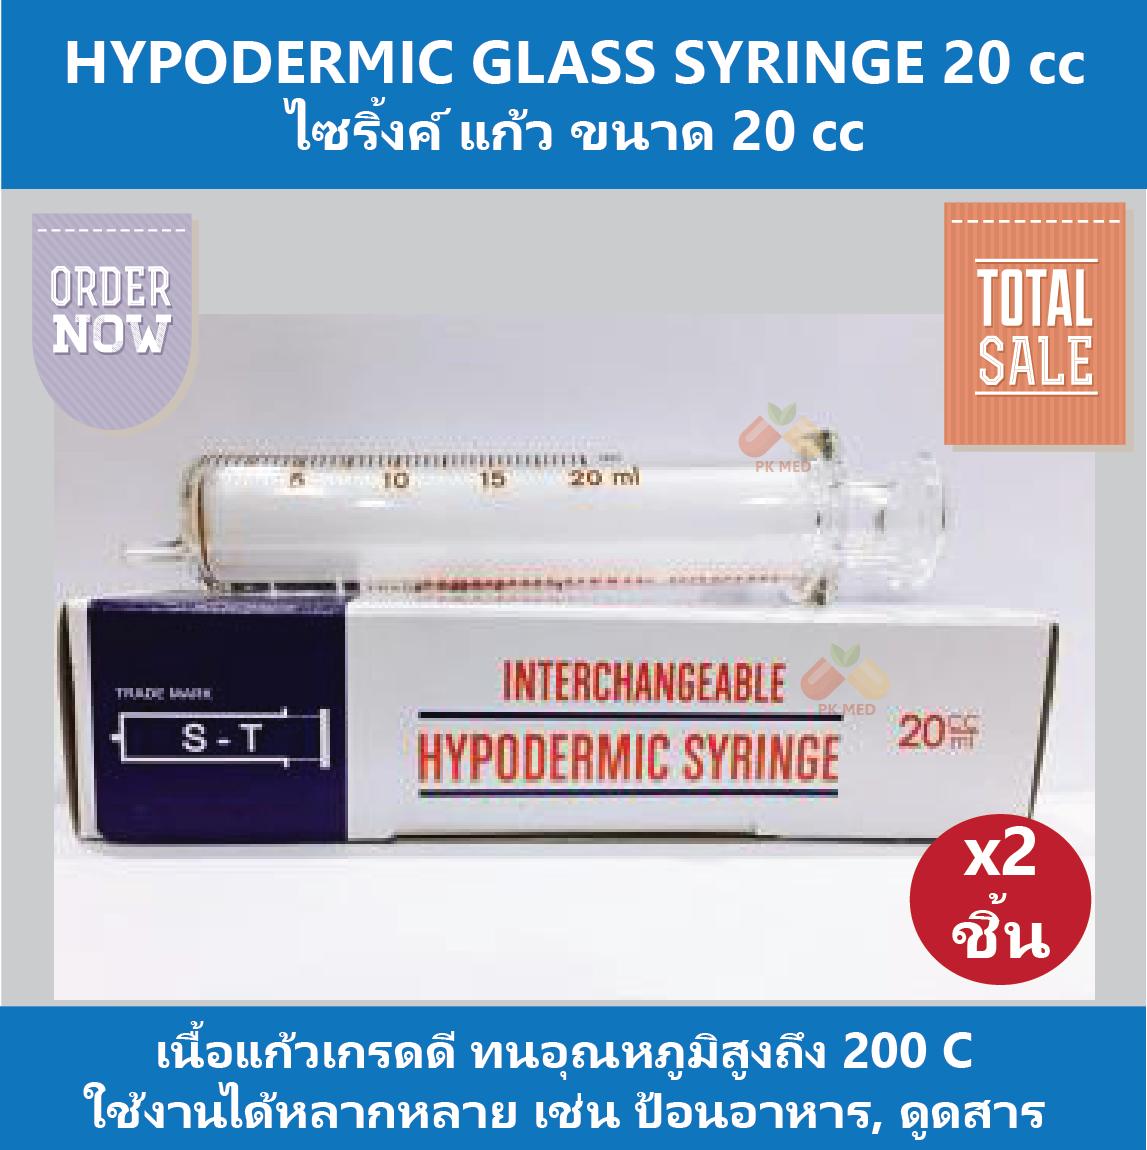 (2 ชิ้น) HYPODERMIC GLASS SYRINGE กระบอกฉีดยา ไซริ้งค์ ไซริ้ง ชนิดแก้ว (ไม่มีเข็ม) 20 cc สำหรับใช้ป้อนอาหาร ดูดสารต่างๆ